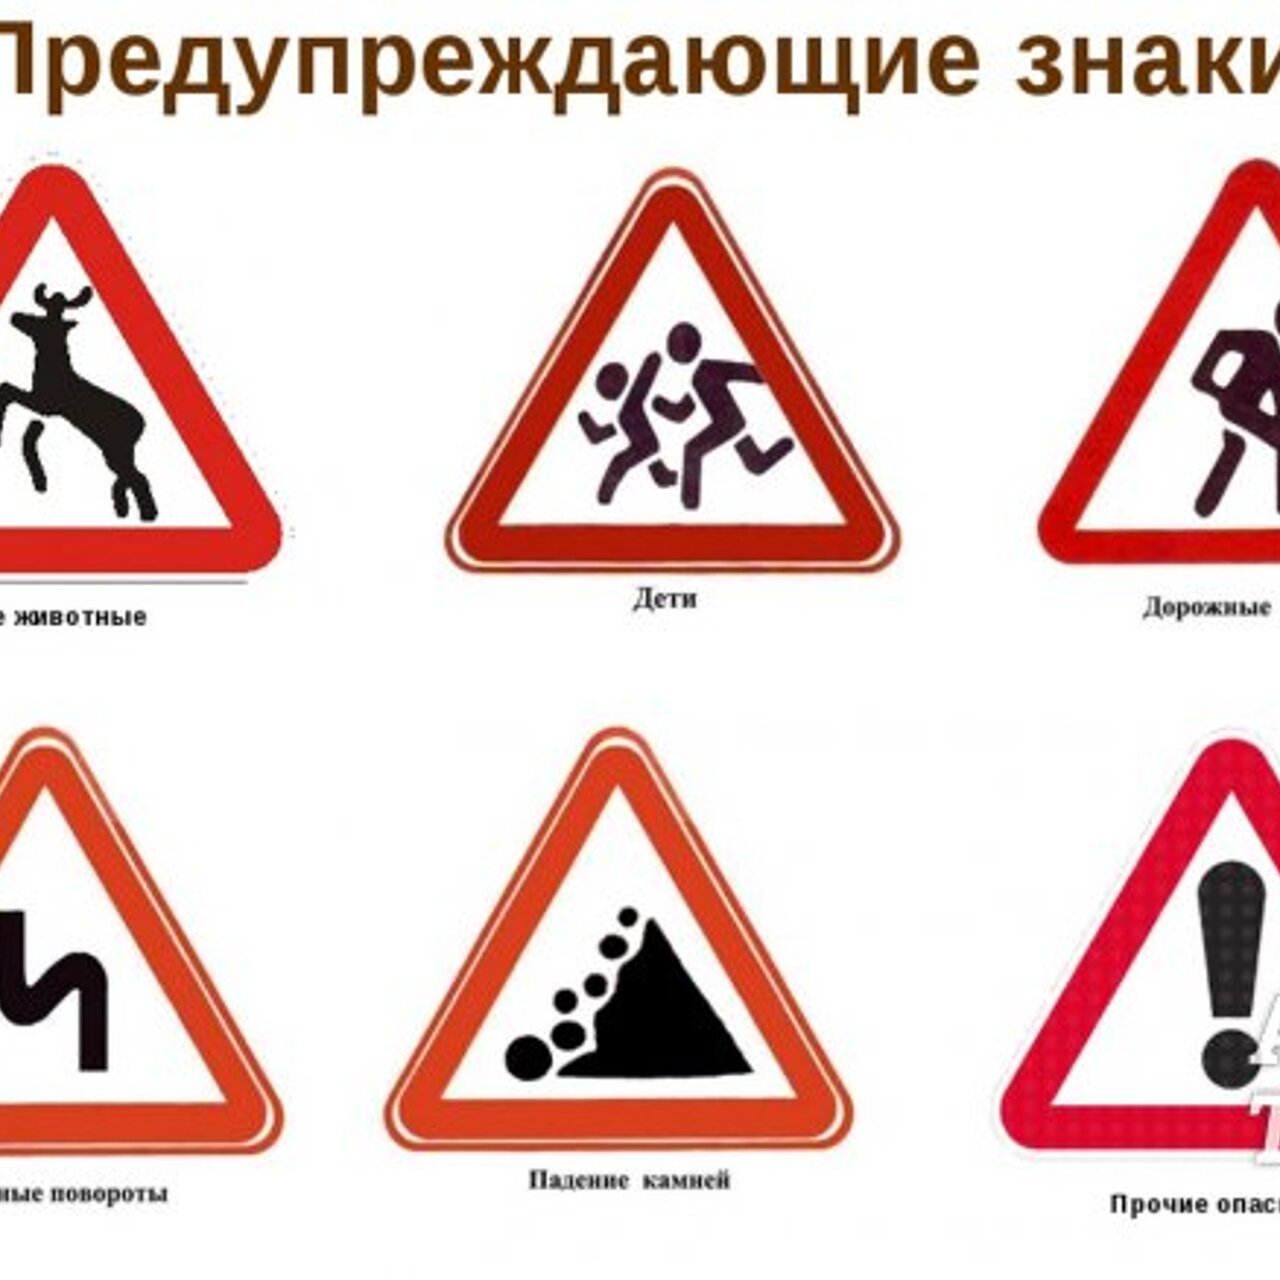 Какой знак можно встретить на автотрассе. Дорожники знаки. Предупреждающие знаки. Предупреждающие знаки дорожного движения. Предупреждающие дорожные знаки для детей.